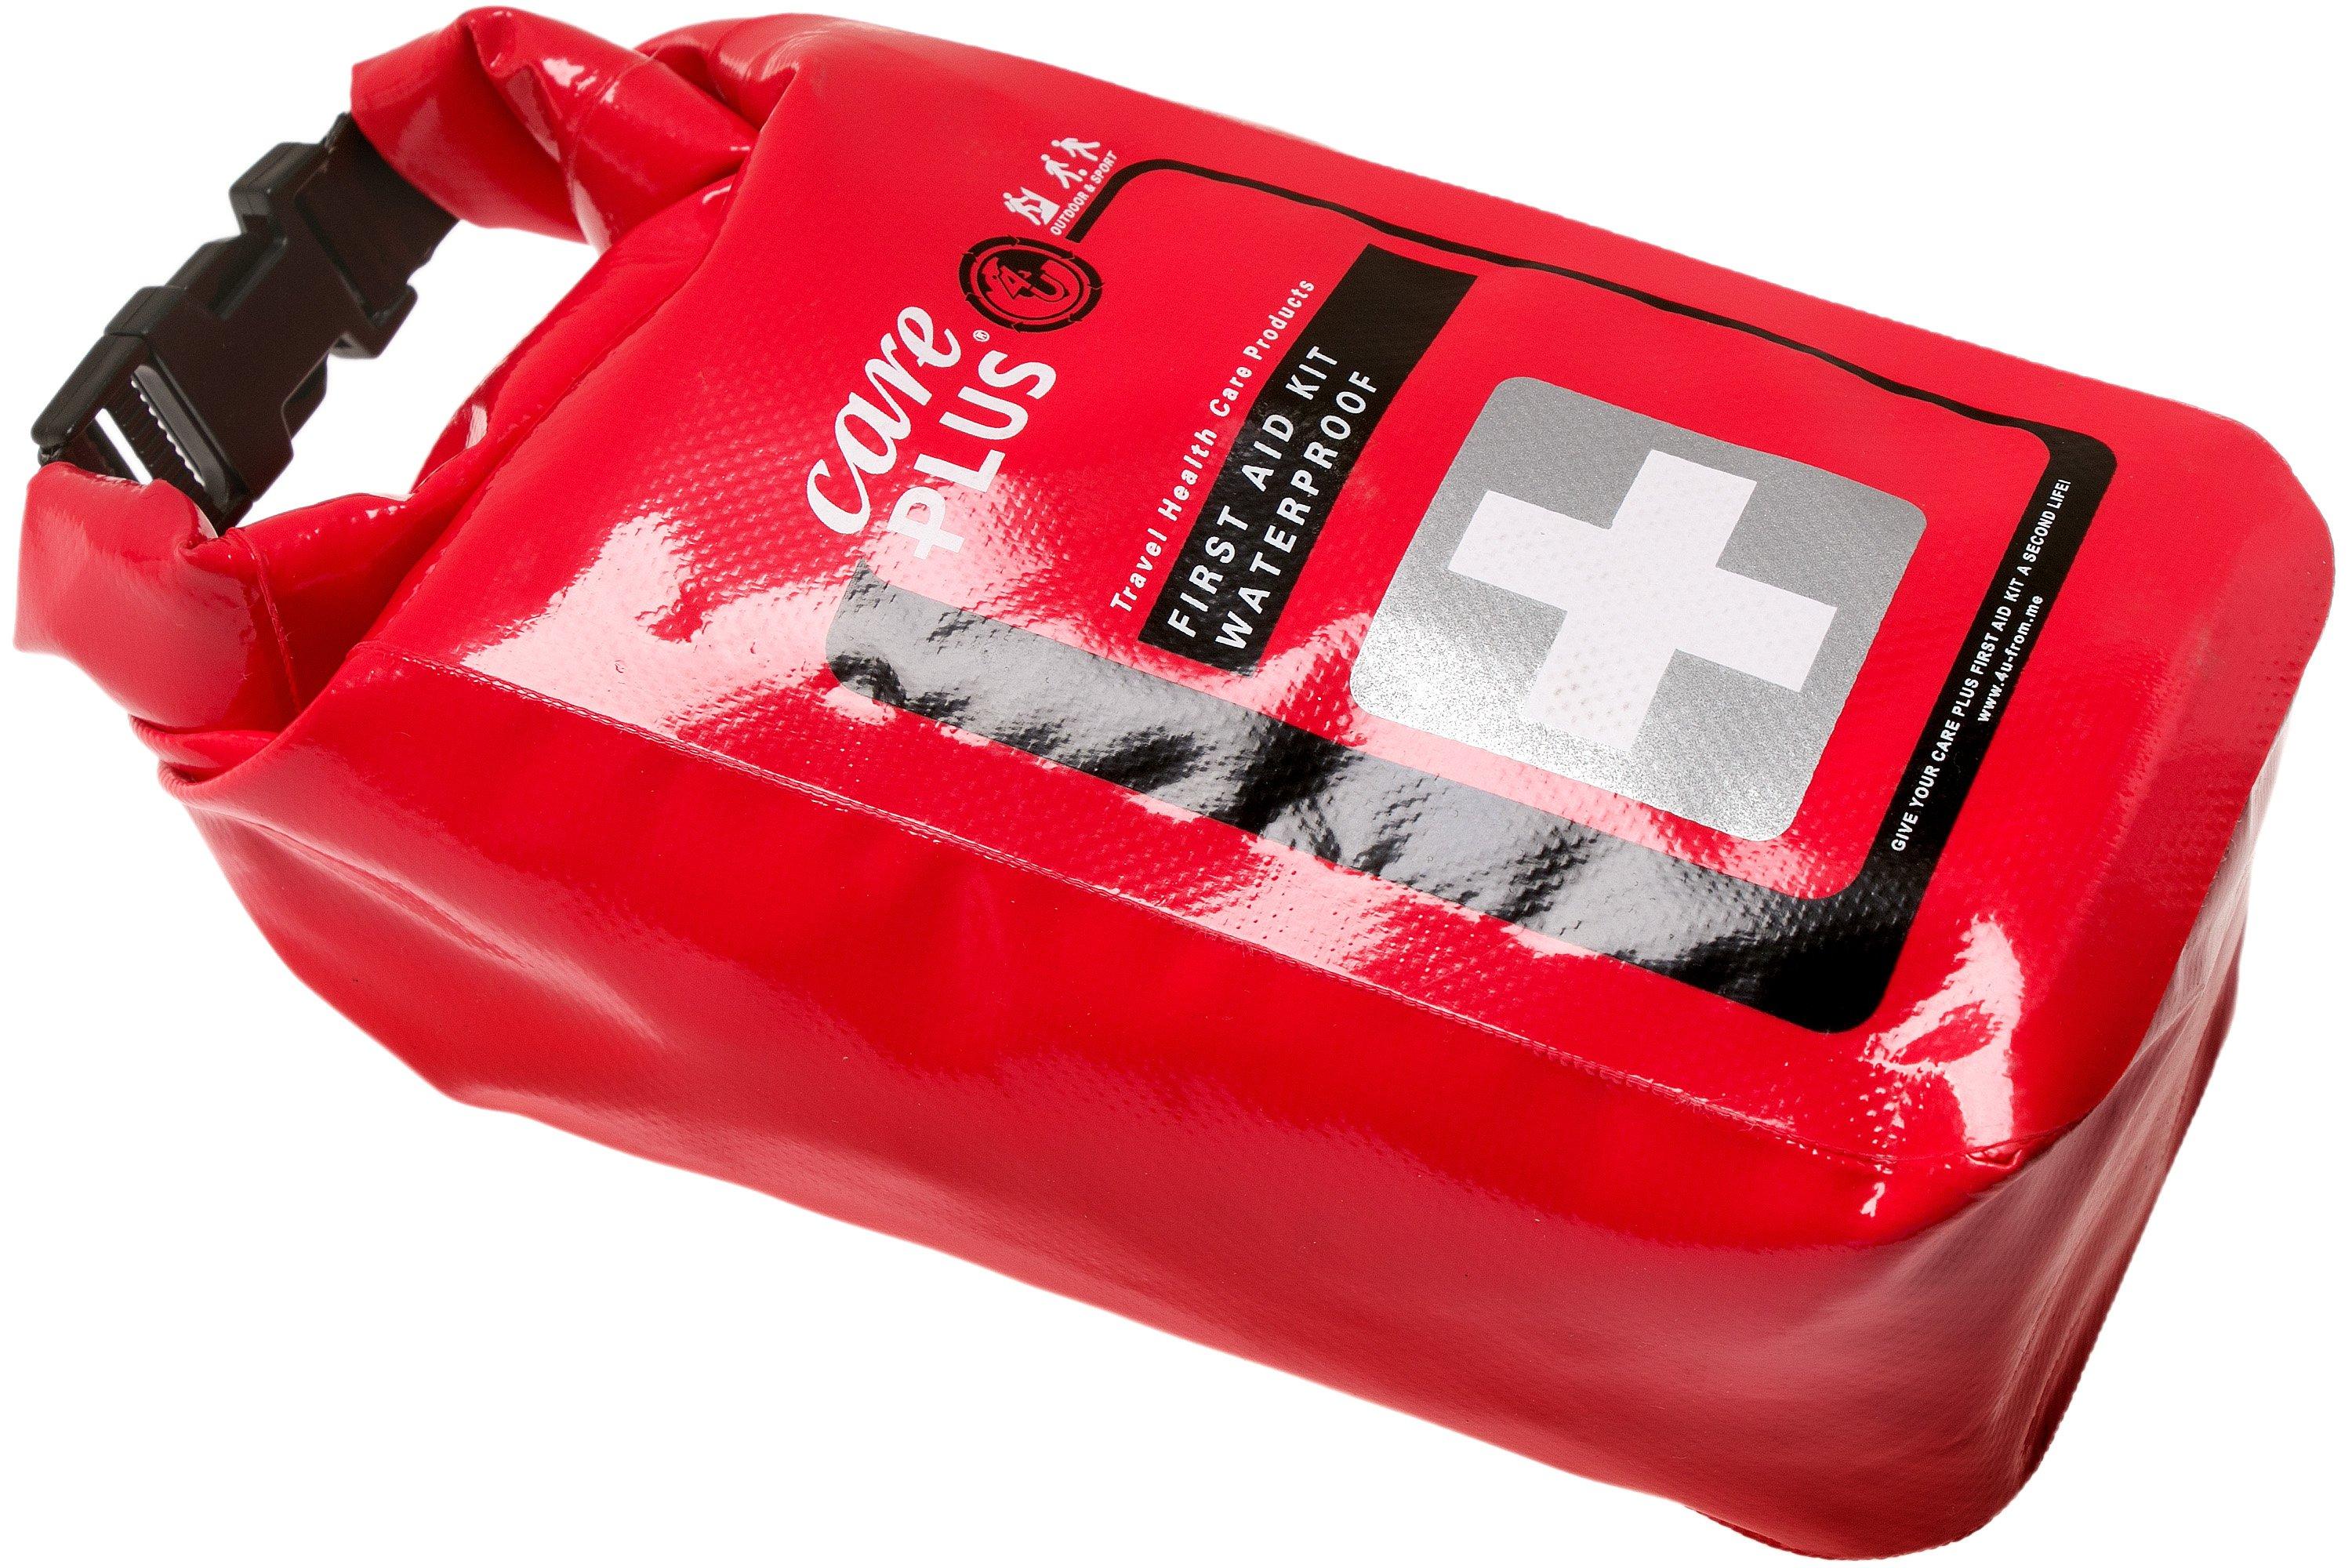 Care Plus First Aid Kit Waterproof, Erste-Hilfe-Set in